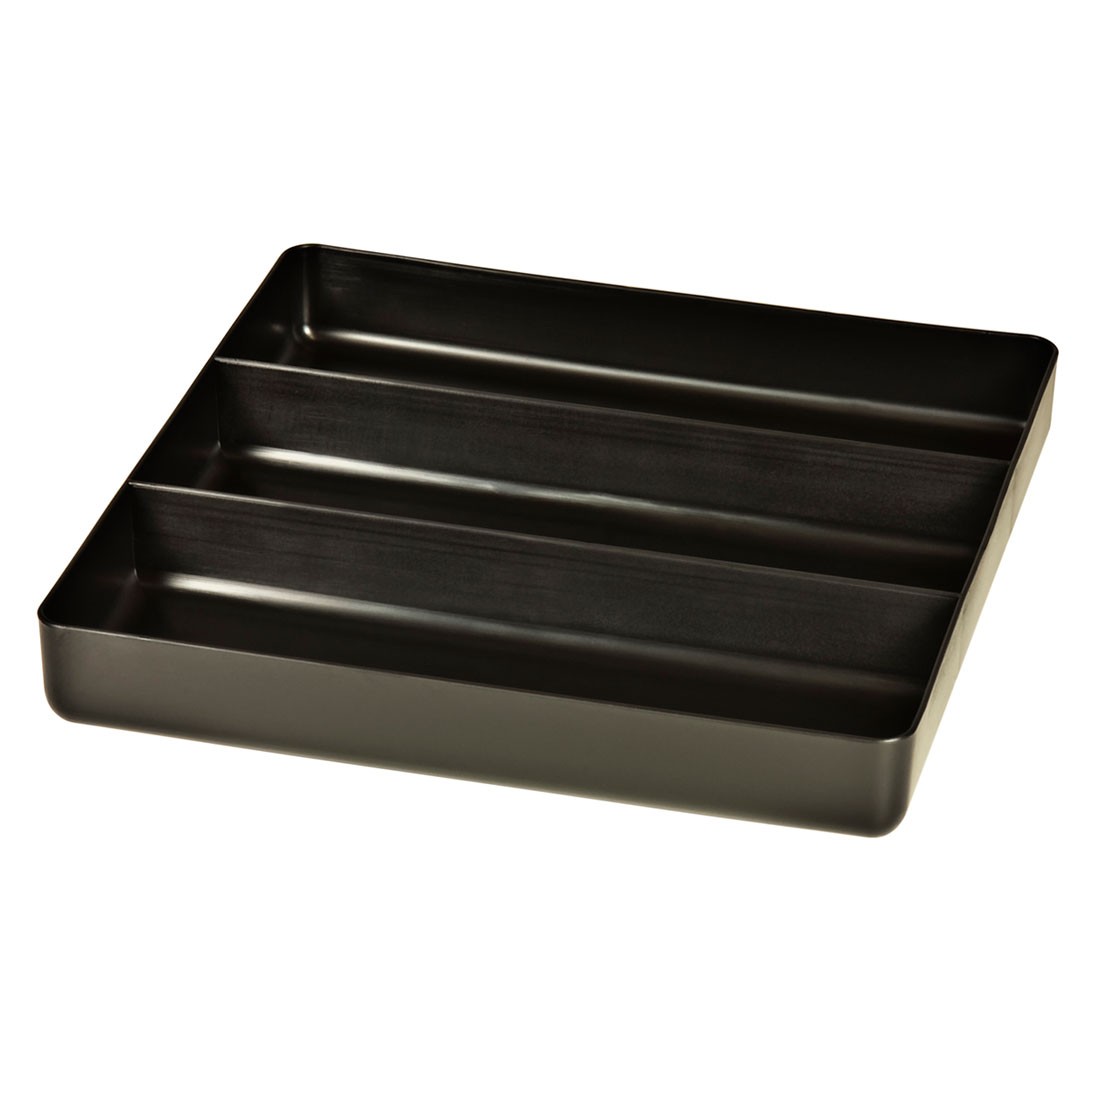 Ernst 5021 3 Compartment Organizer Tray - Black